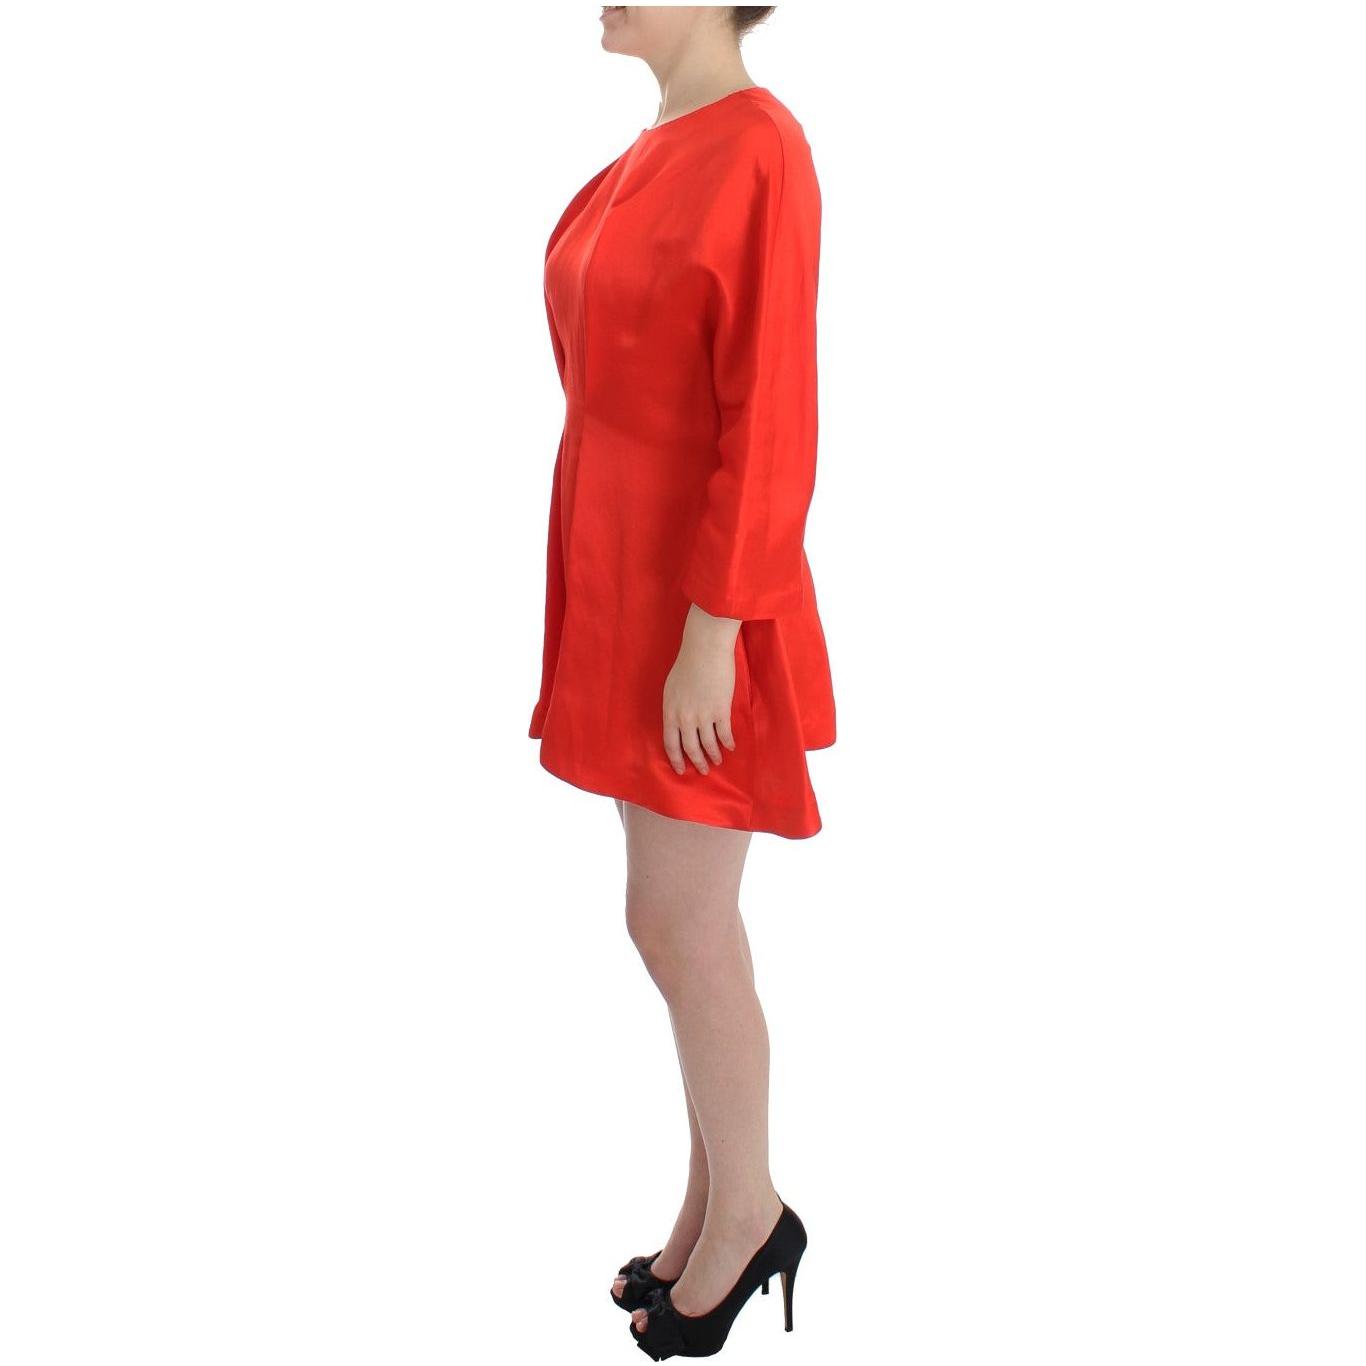 Fyodor Golan Radiant Red Linen Blend Artisan Dress red-mini-linen-3-4-sleeve-sheath-dress 185328-red-mini-linen-34-sleeve-sheath-dress-1.jpg